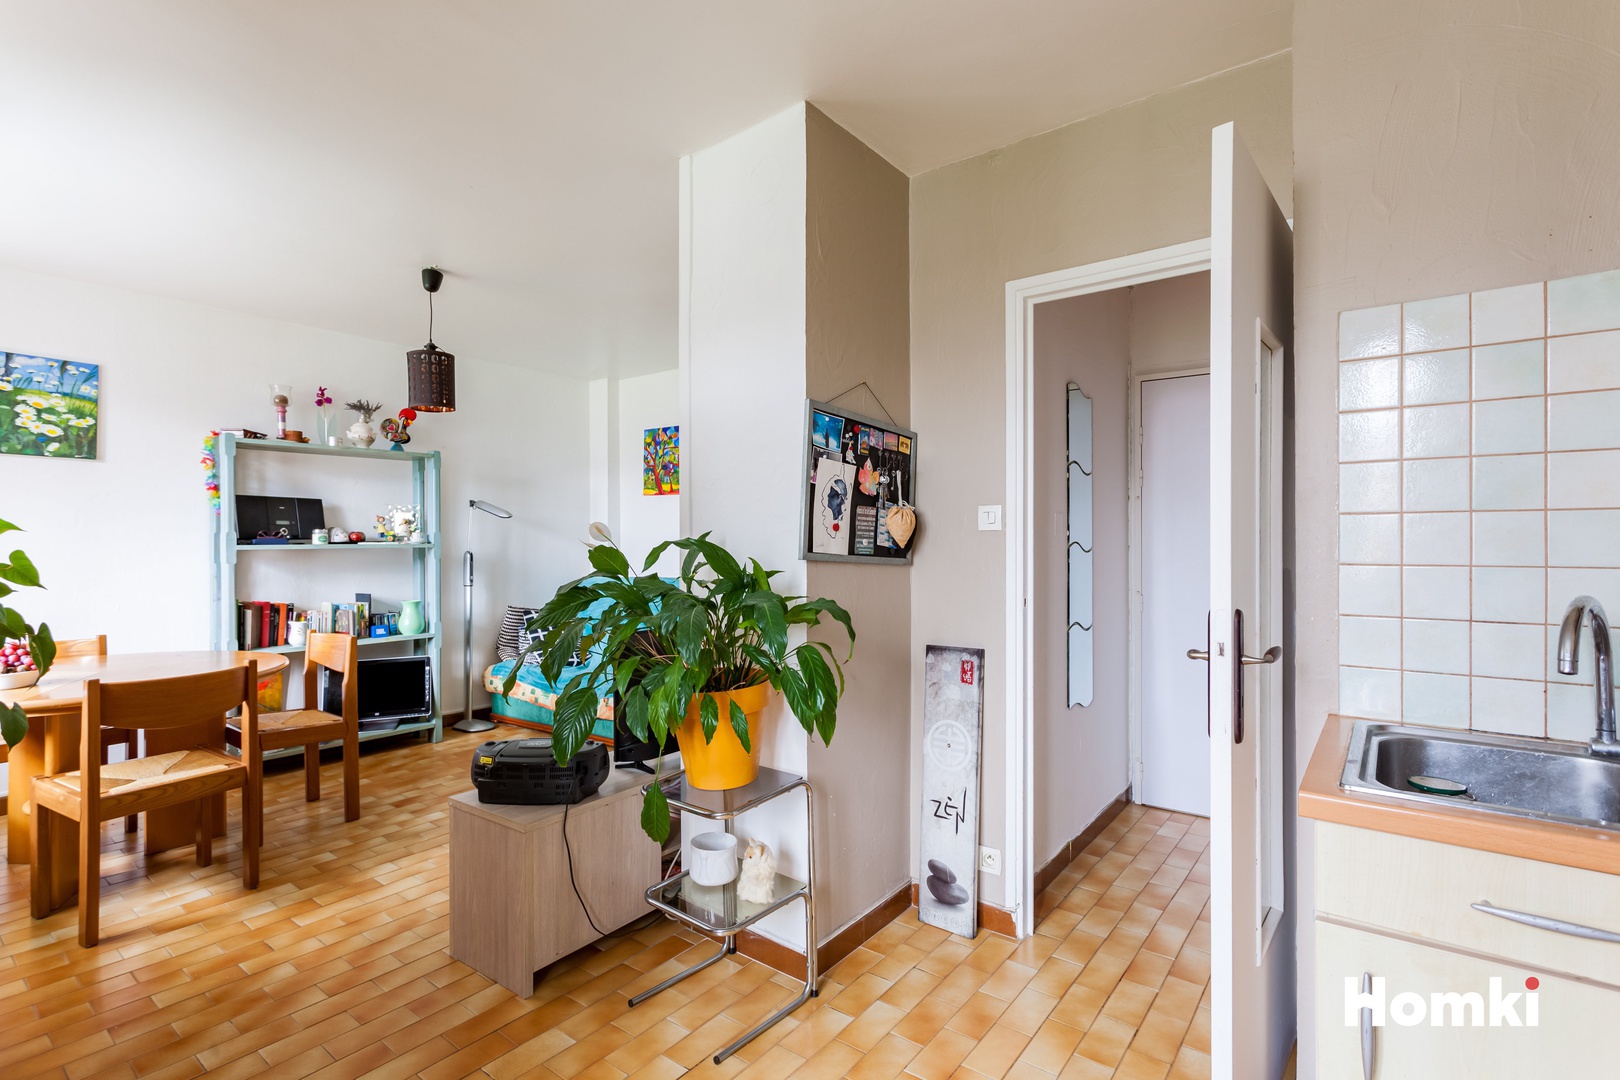 Homki - Vente Appartement  de 43.0 m² à Saint-Martin-d'Hères 38400